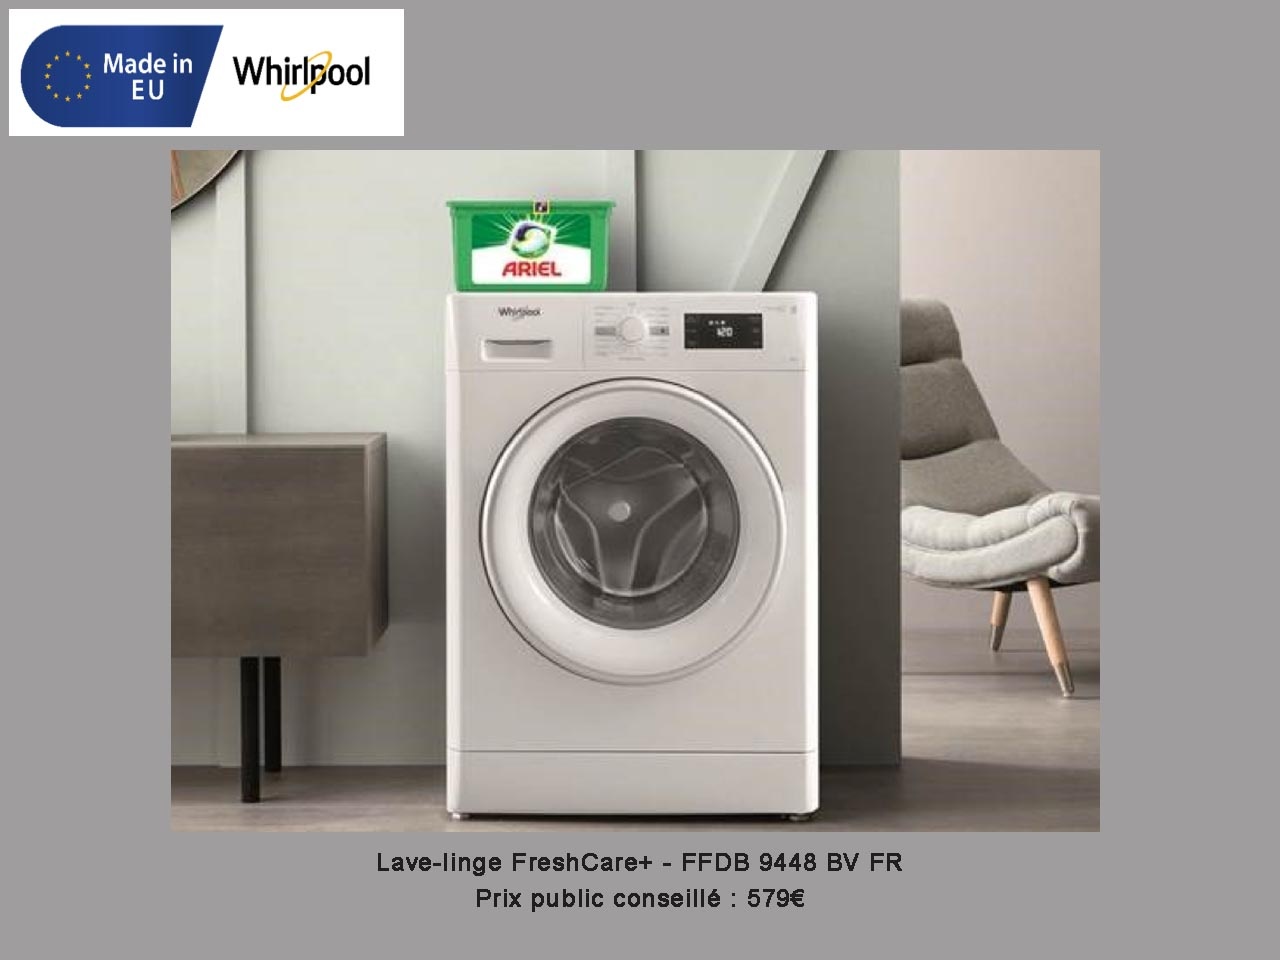 Whirlpool s’associe à Ariel pour promouvoir son nouveau lave-linge FreshCare+